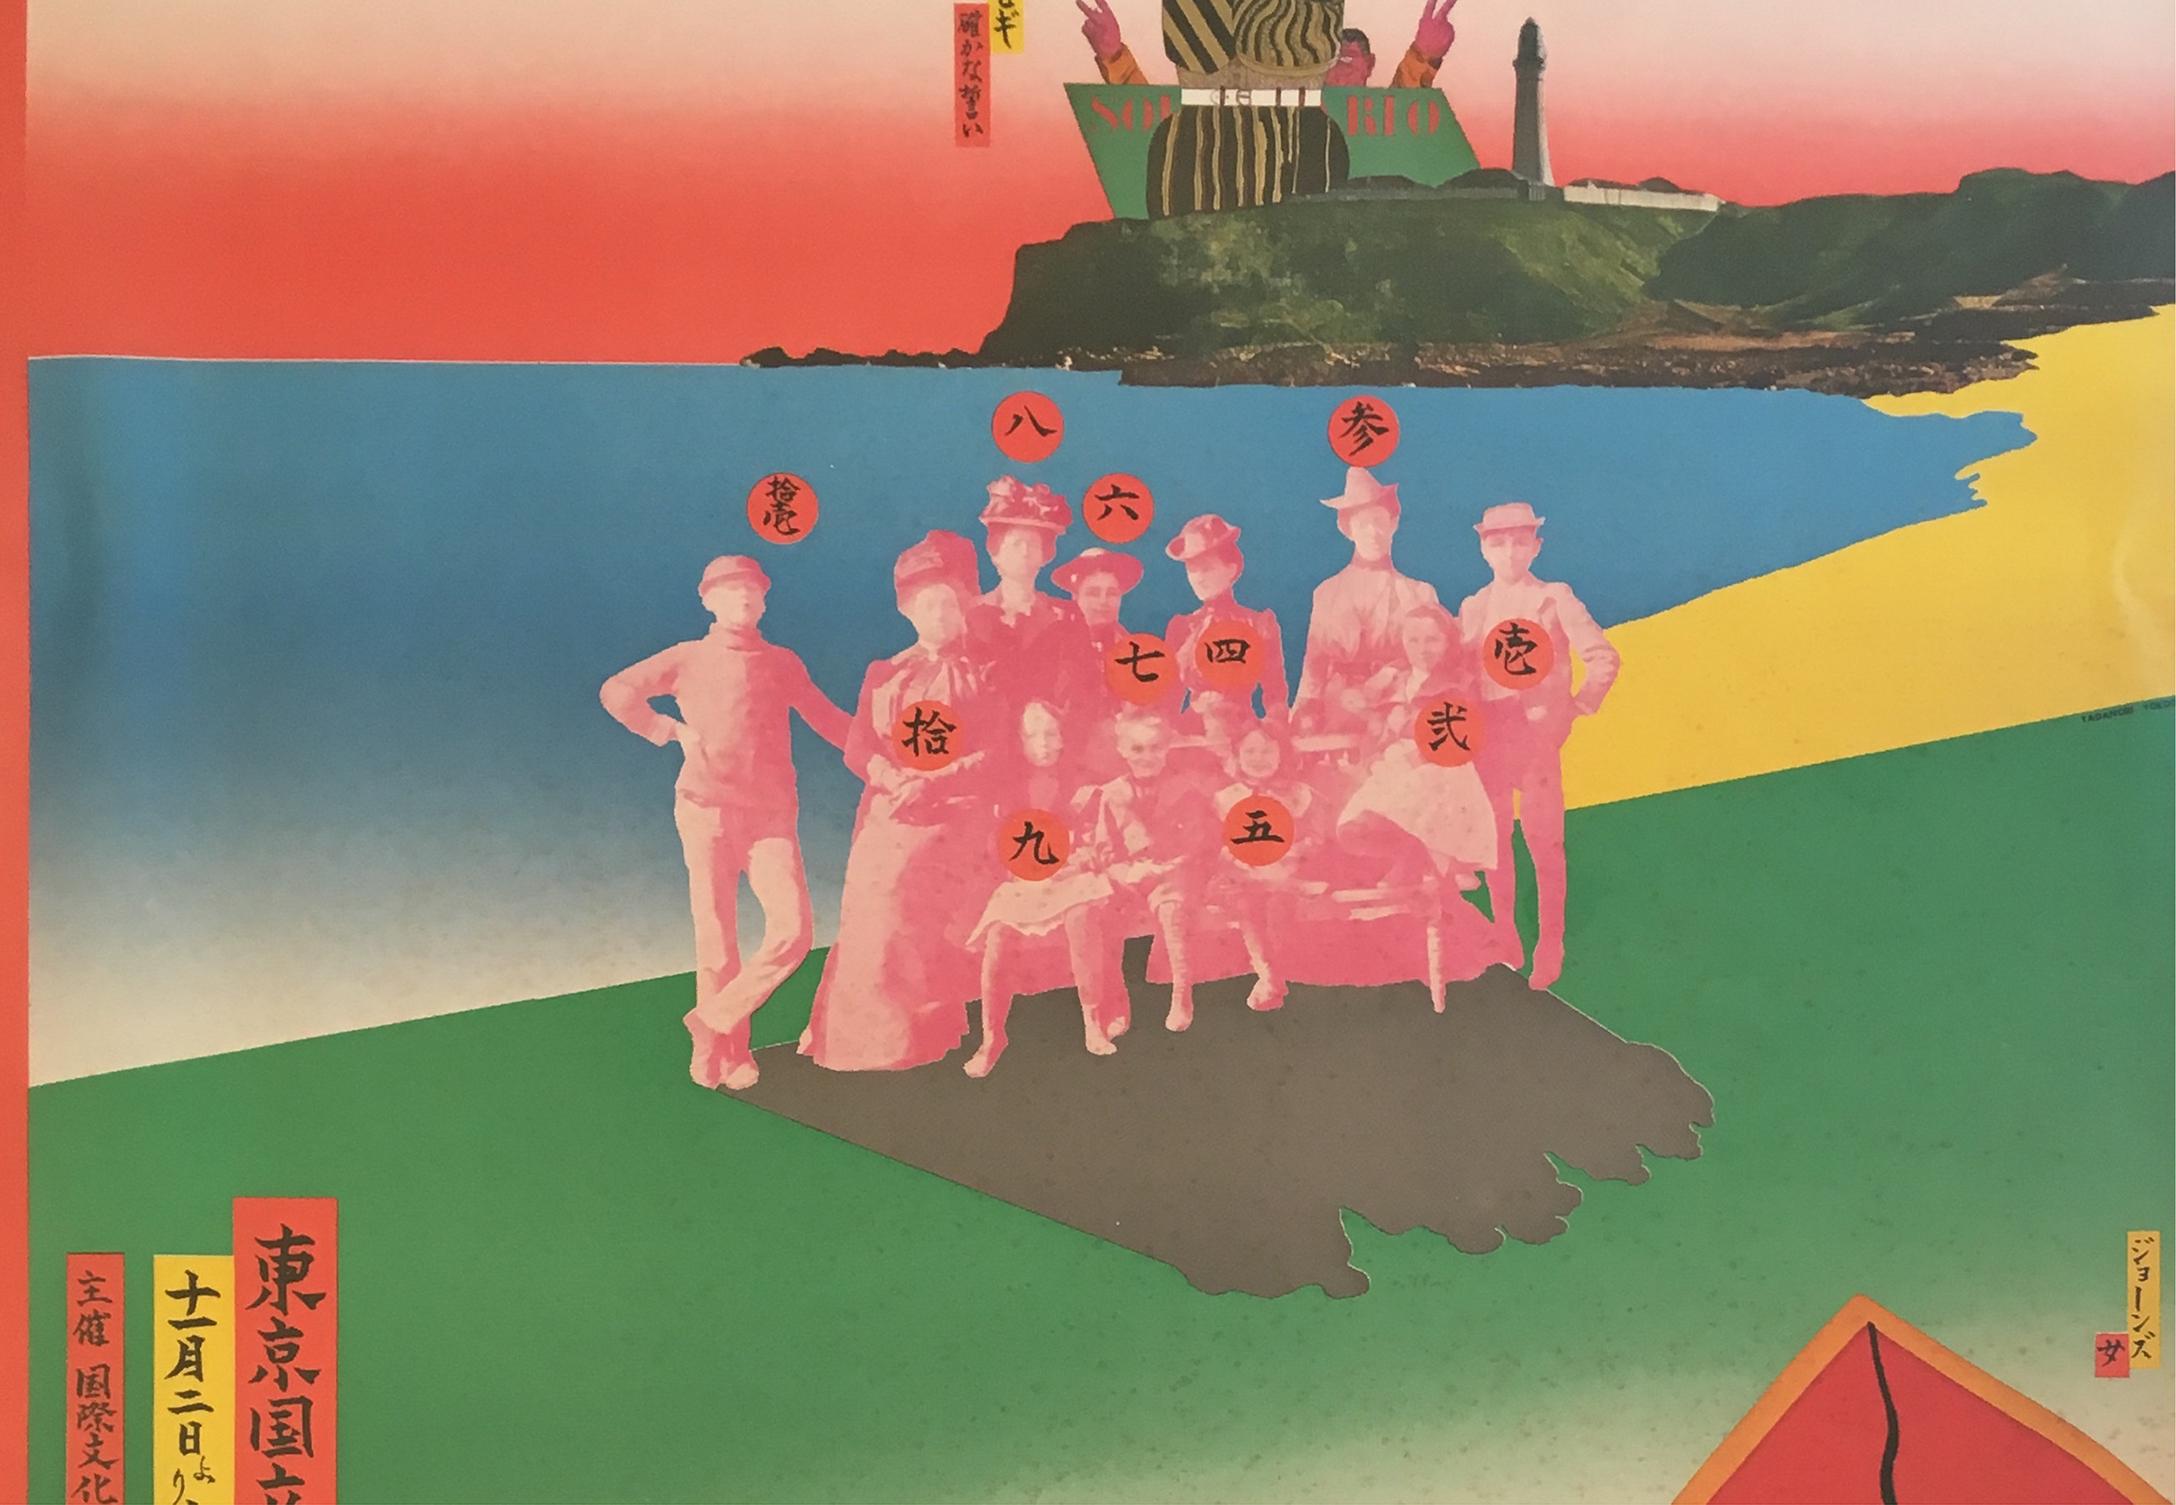 Tadanori Yokoo
„Die 6. Internationale Biennale der Druckgrafik in Tokio“
Das Nationale Museum für Moderne Kunst, Tokio, 1968
Offsetlithografie-Poster
42 x 30 Zoll (Bild)
45 1/2 x 33 1/2 x 1 1/2 Zoll (Rahmen)
Signiert und mit dem Siegel des Künstlers